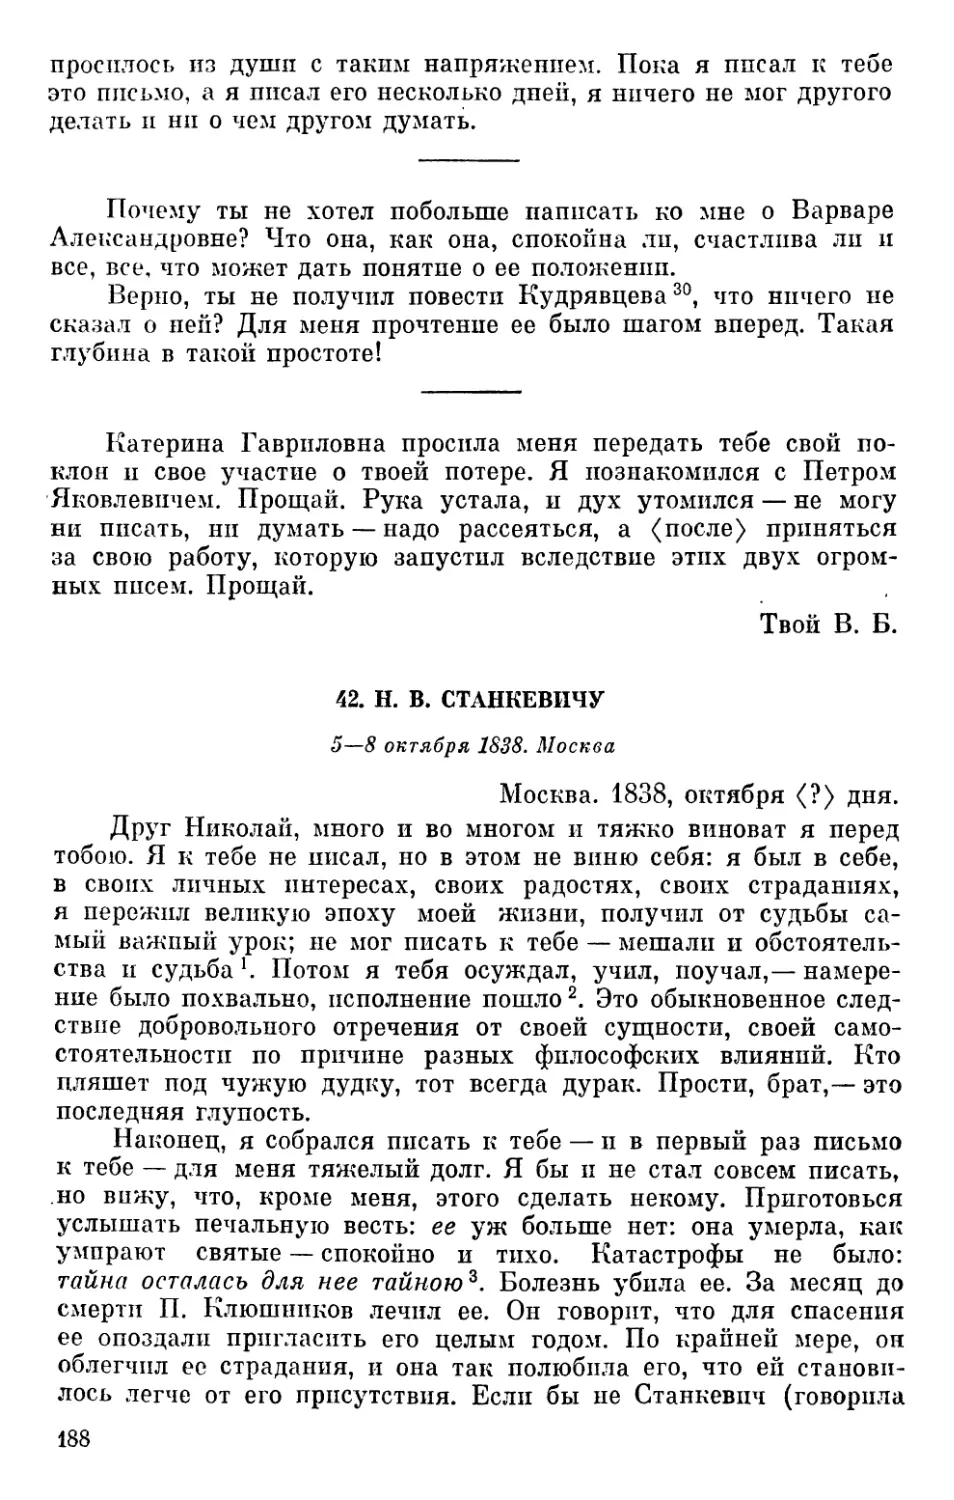 42. Н. В. Станкевичу. 5—8 октября 1838